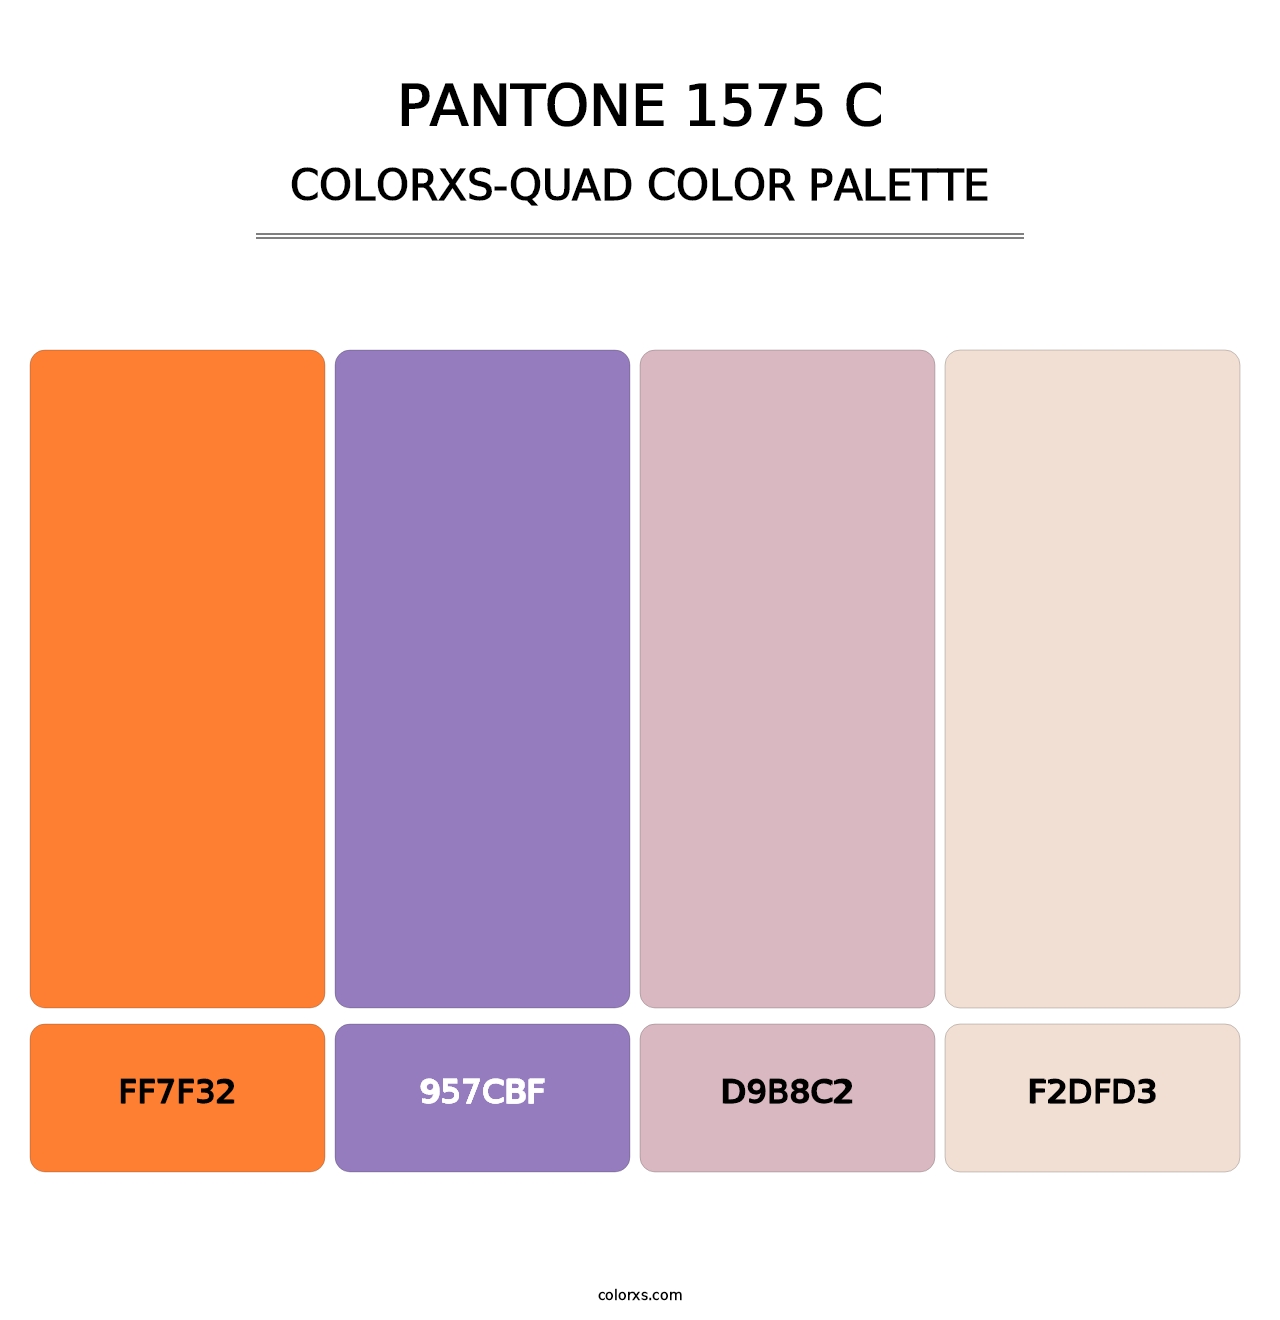 PANTONE 1575 C - Colorxs Quad Palette